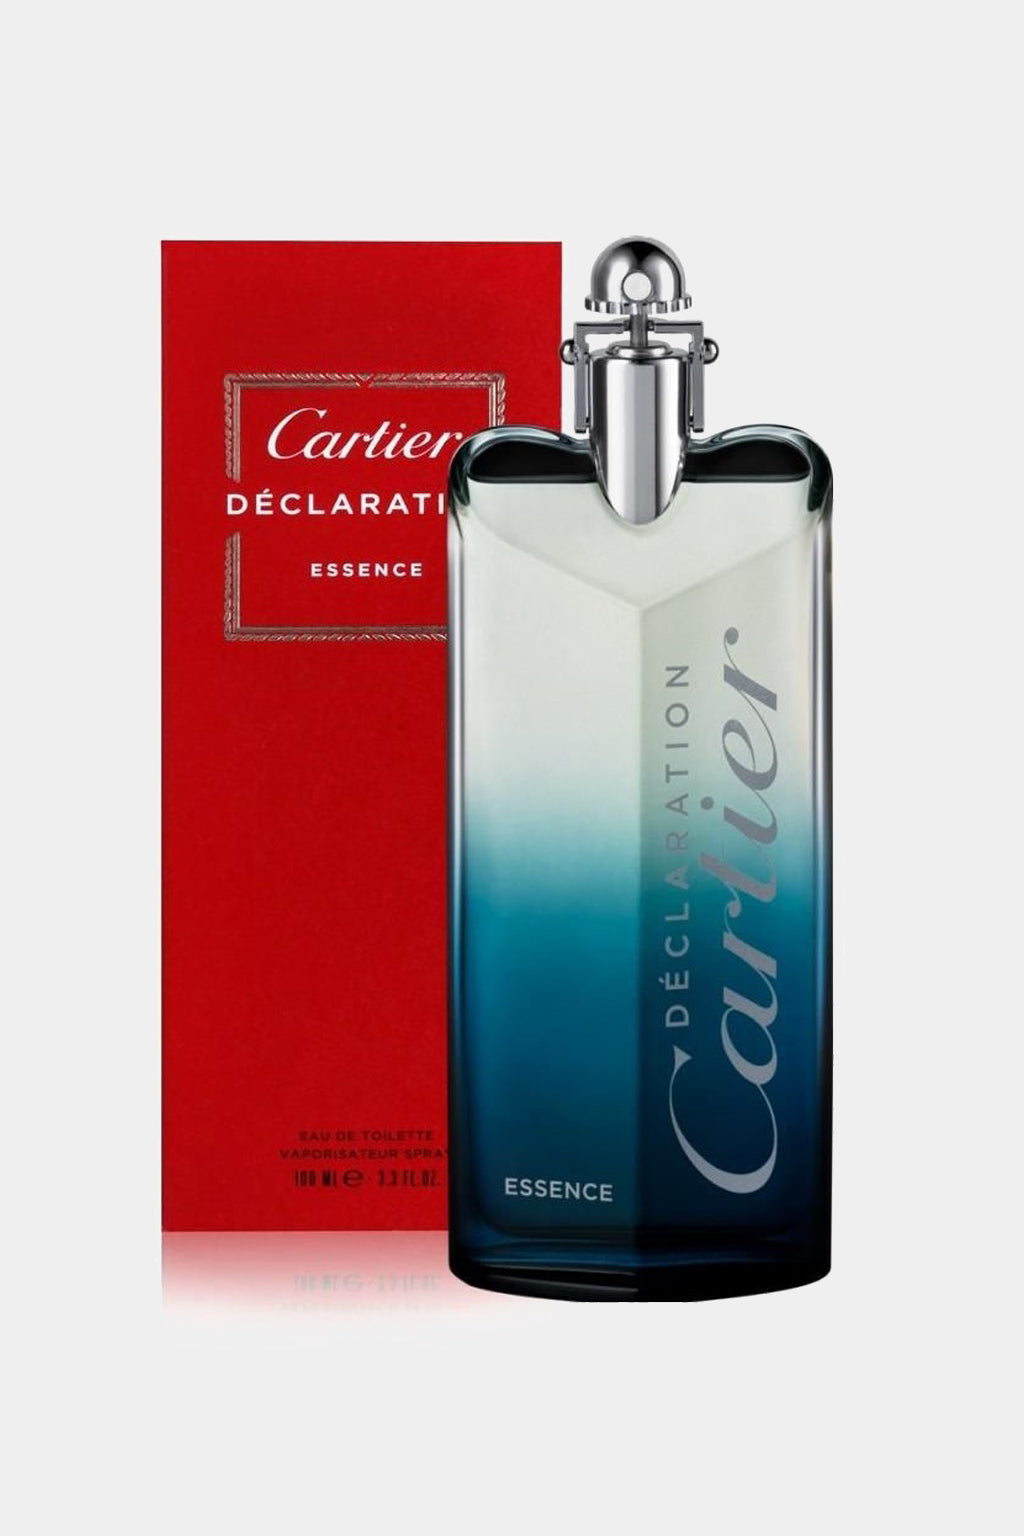 Cartier - Declaration Essence Eau de Toilette